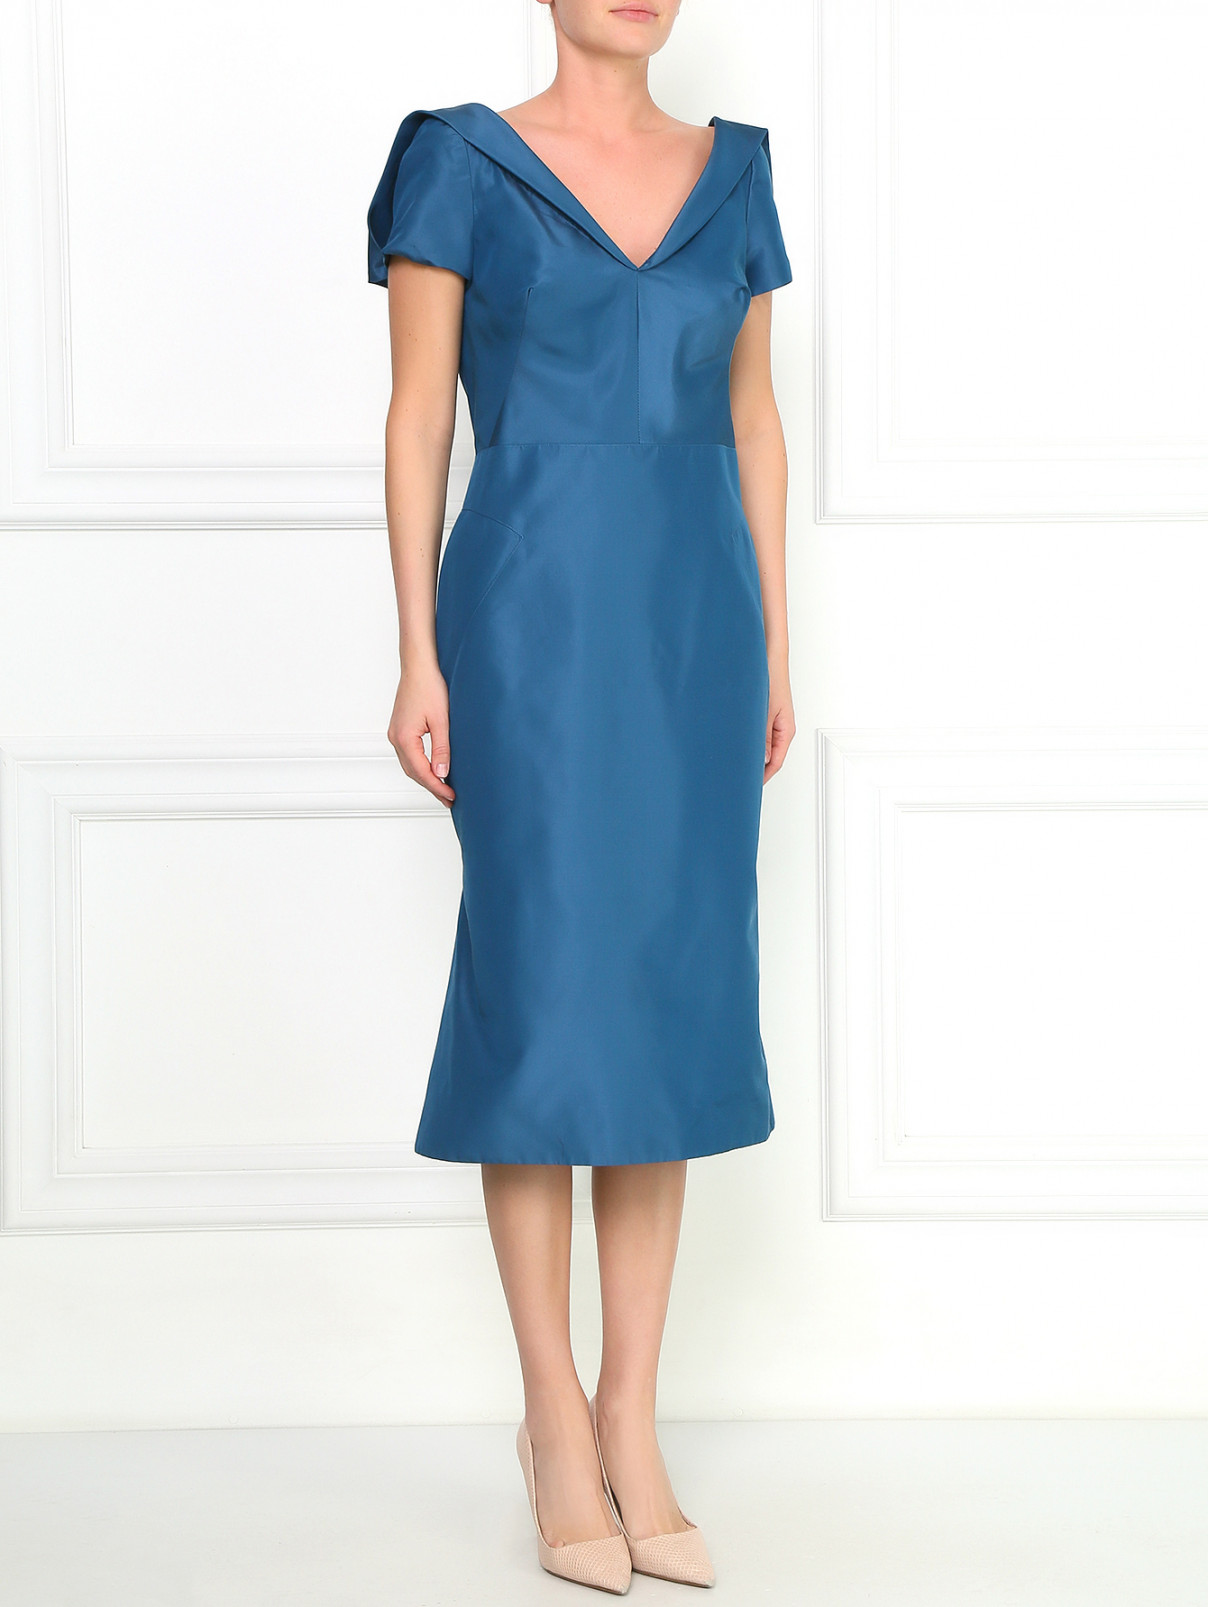 Платье-миди из шелка с V-образным вырезом Zac Posen  –  Модель Общий вид  – Цвет:  Синий